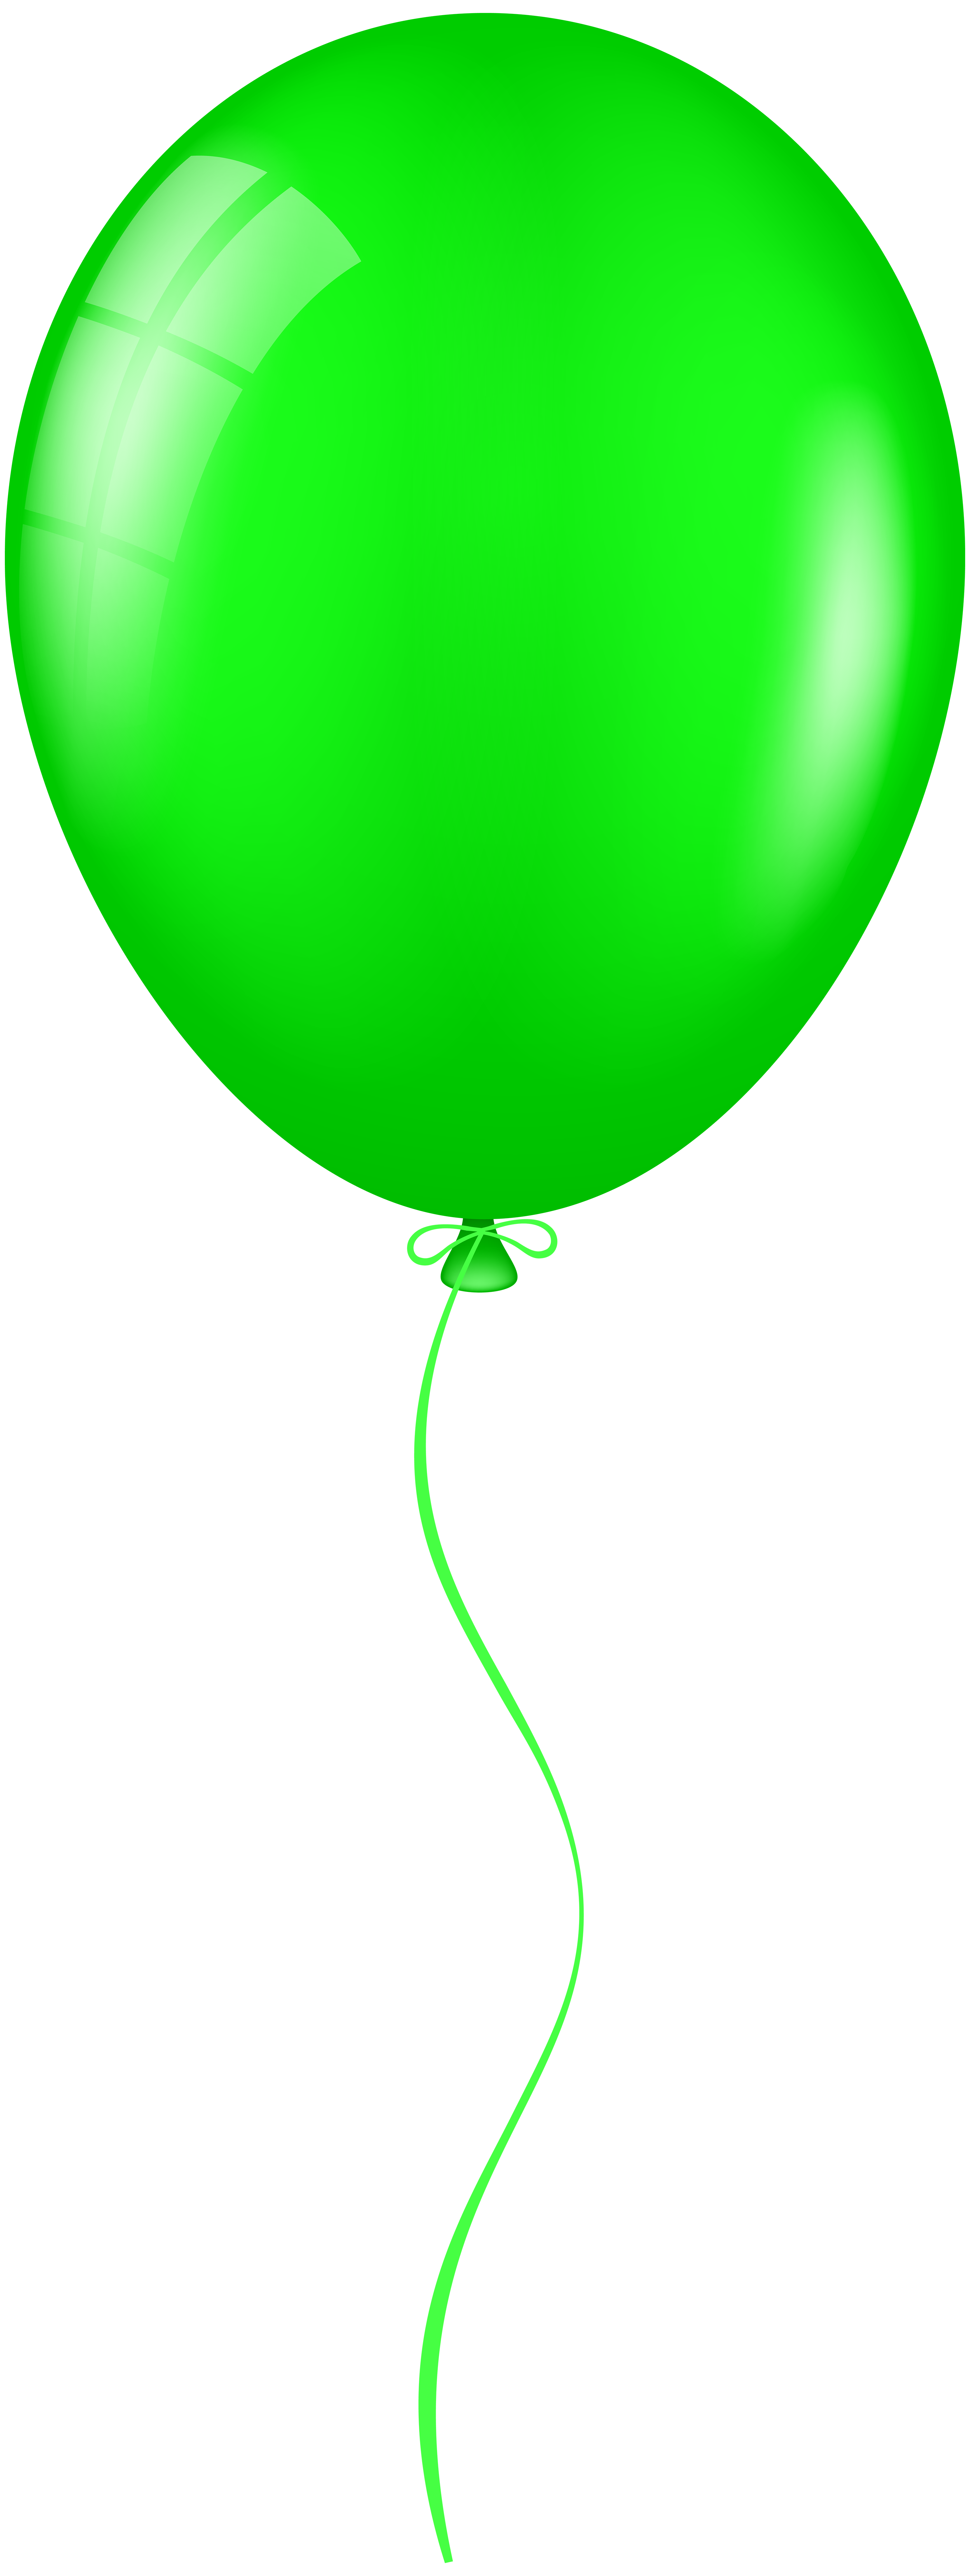 green balloon clip art - photo #16